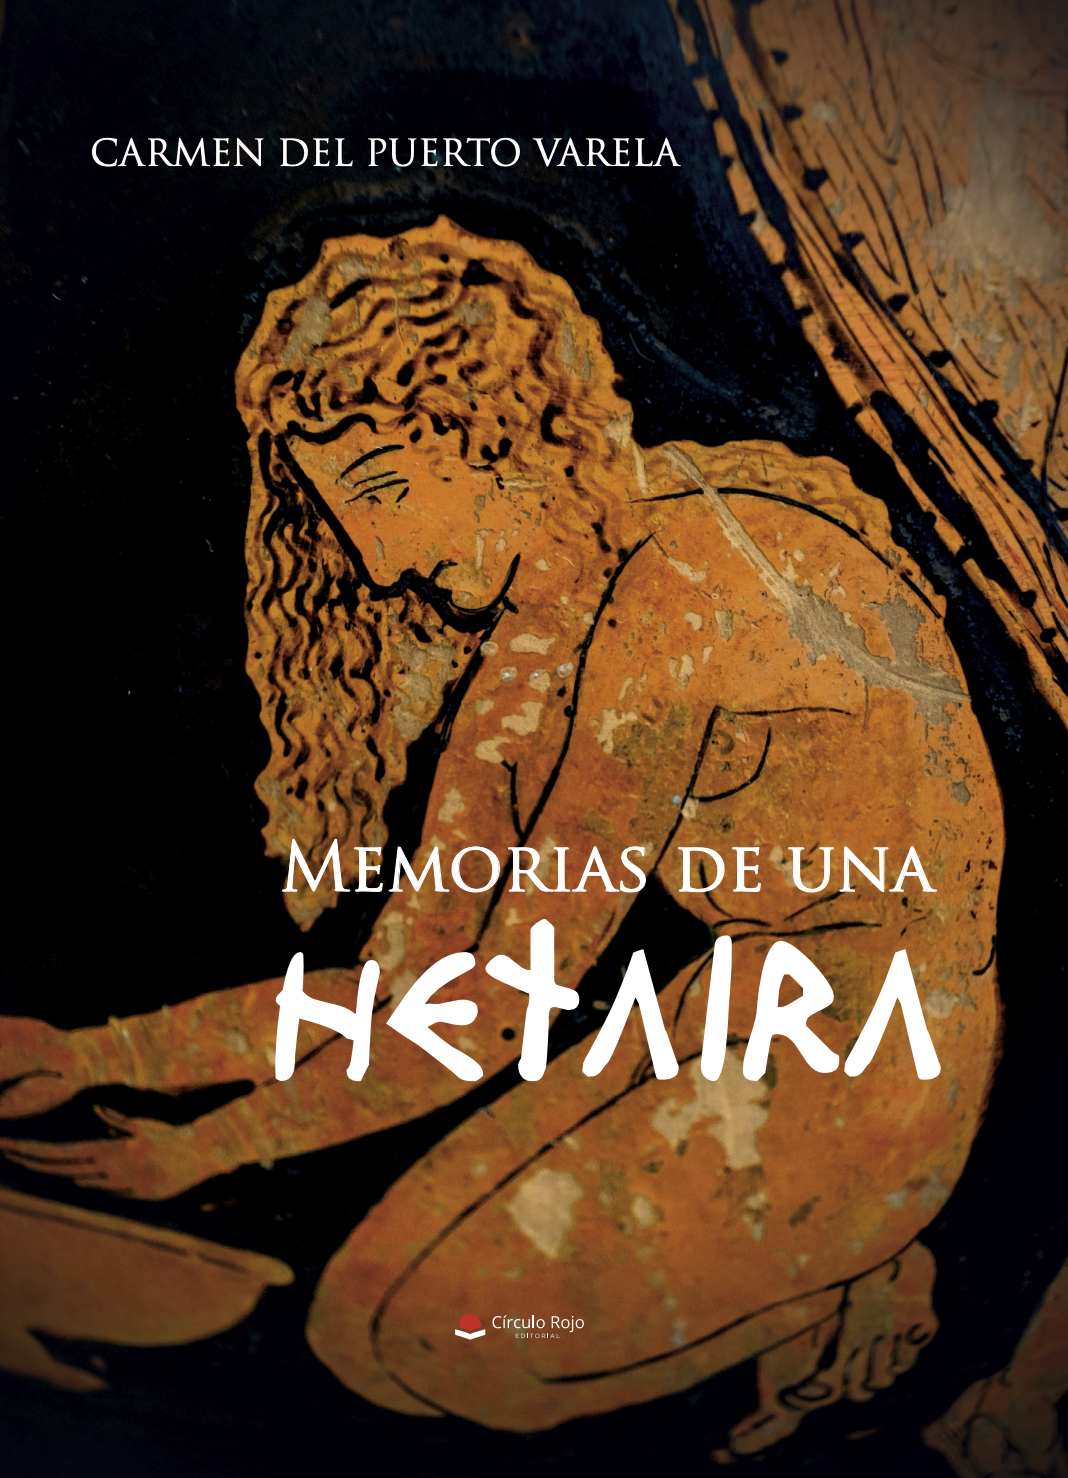 Charlamos con Carmen del Puerto Varela, autora de “Memorias de una hetaira”, obra publicada con Círculo Rojo.